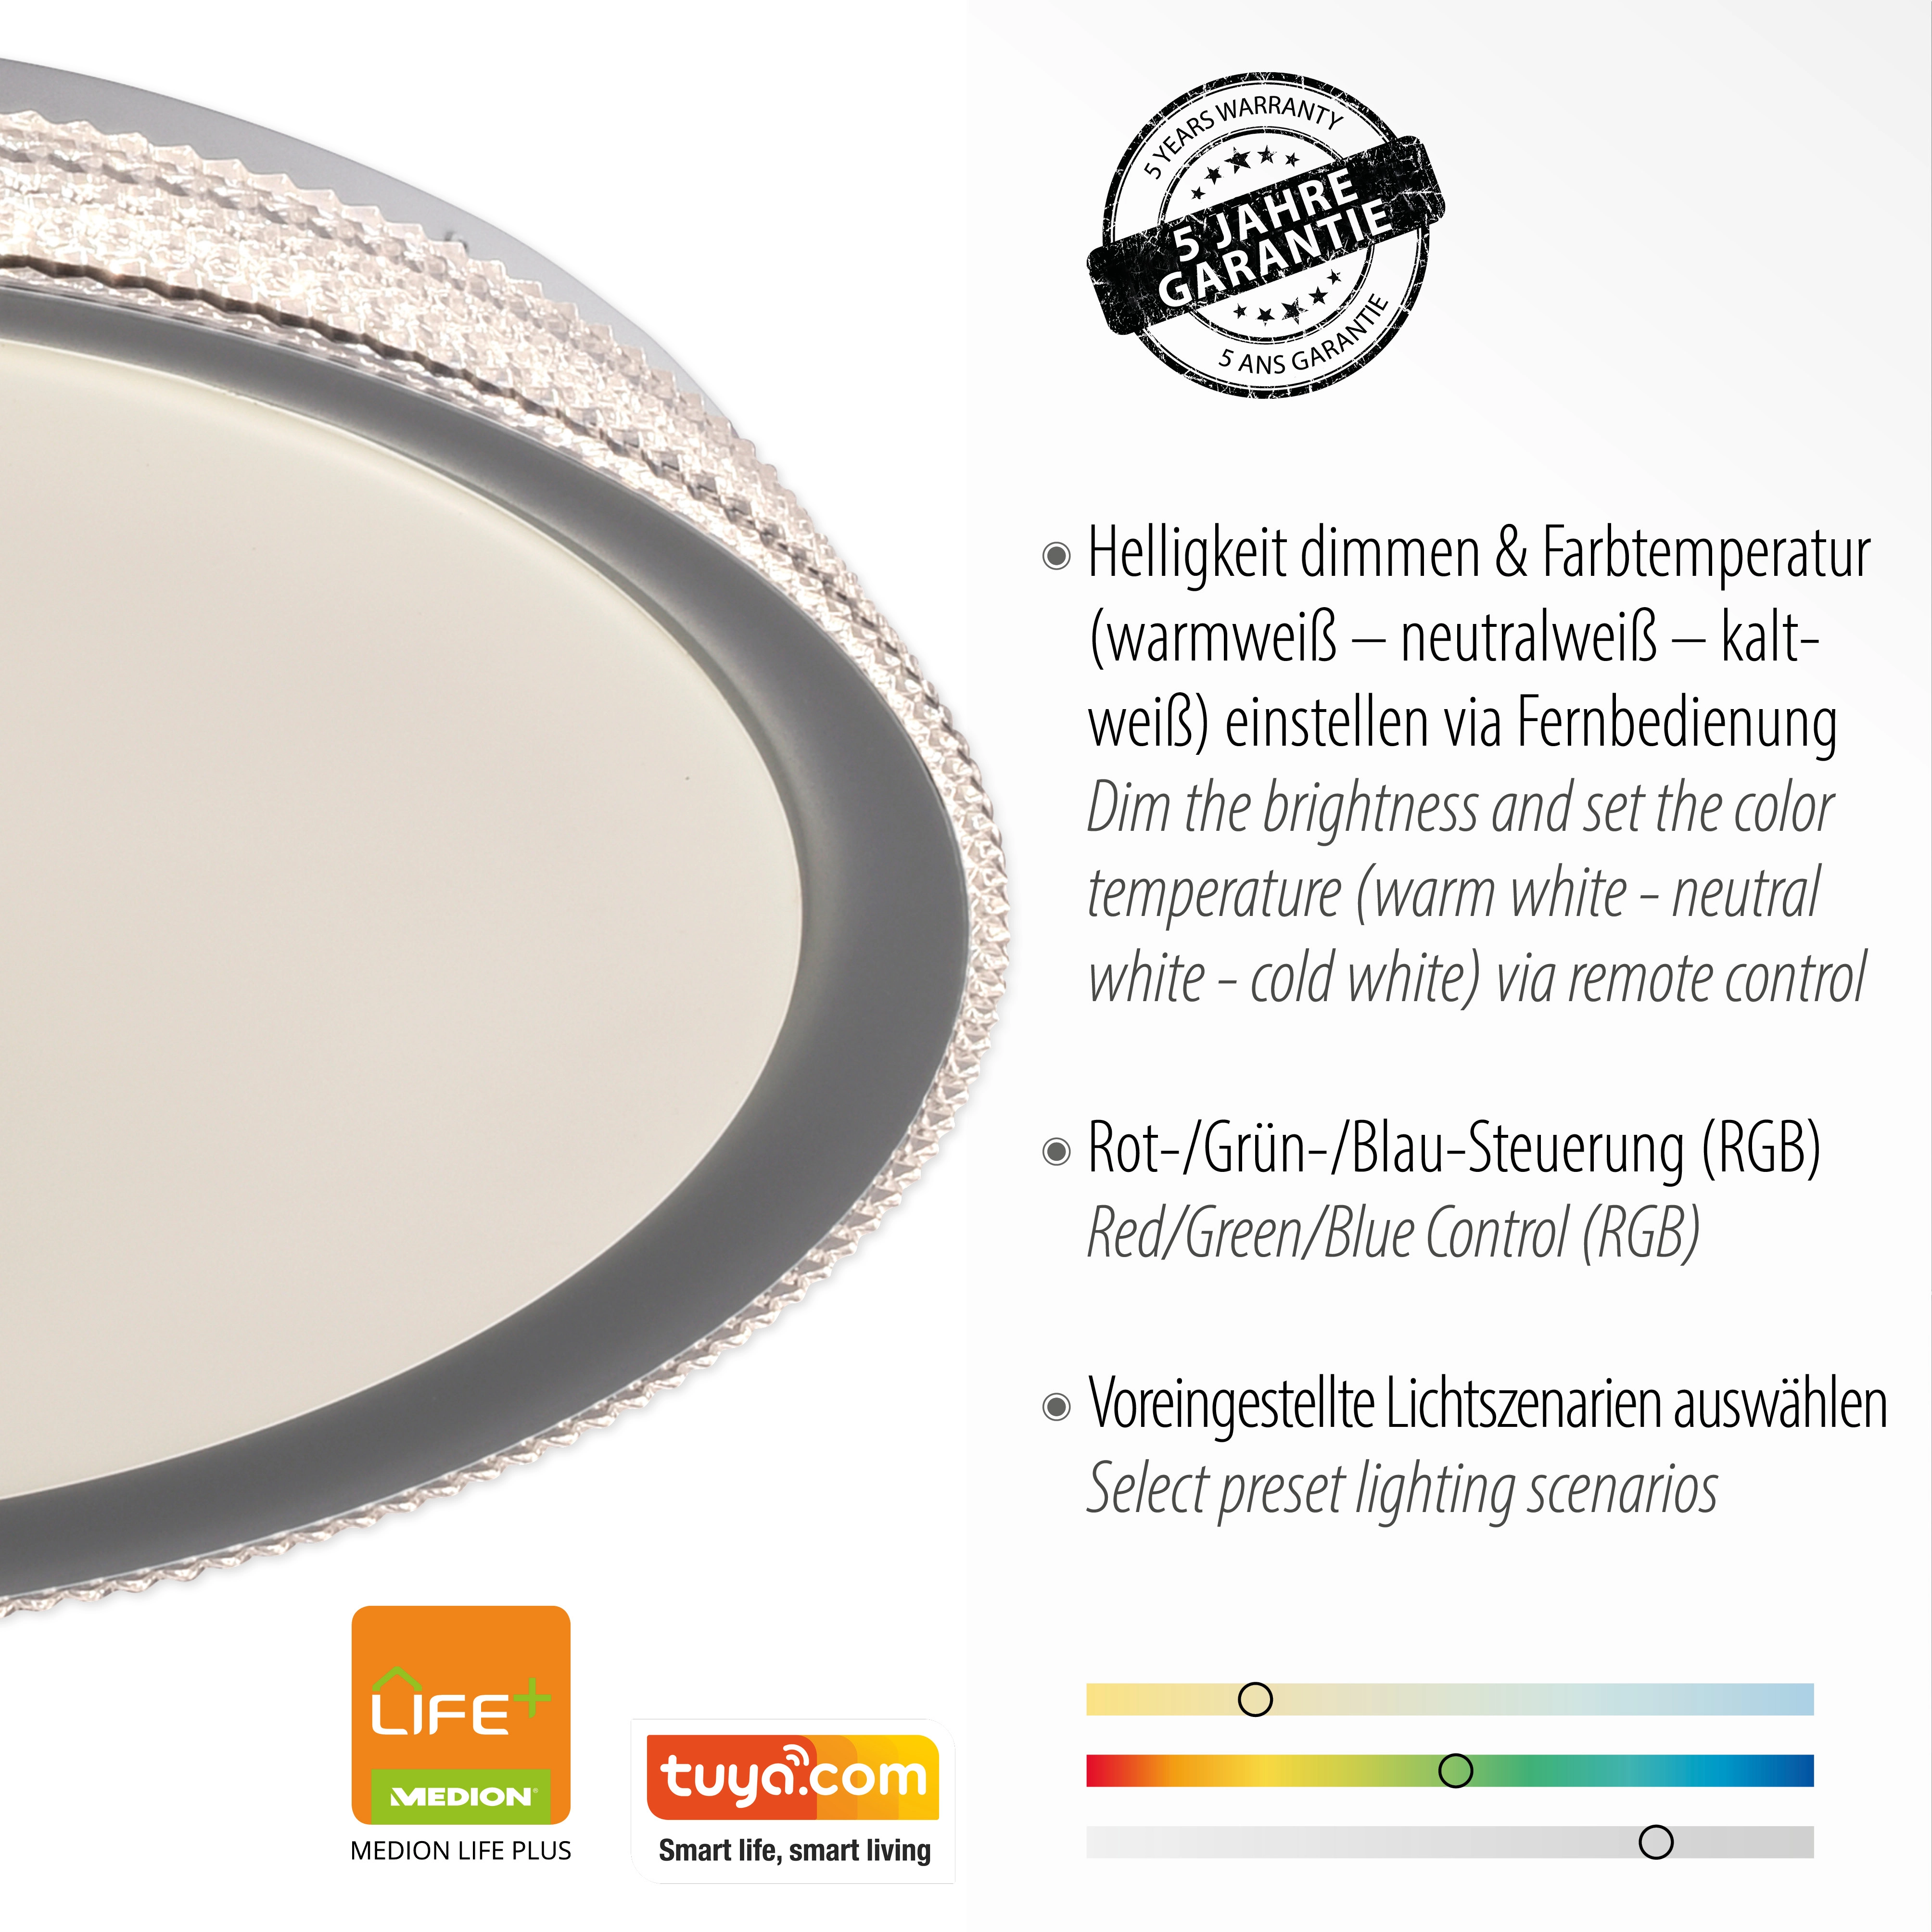 LED-Deckenleuchte bei Just Light. Lolasmart-Kari OBI Silber kaufen